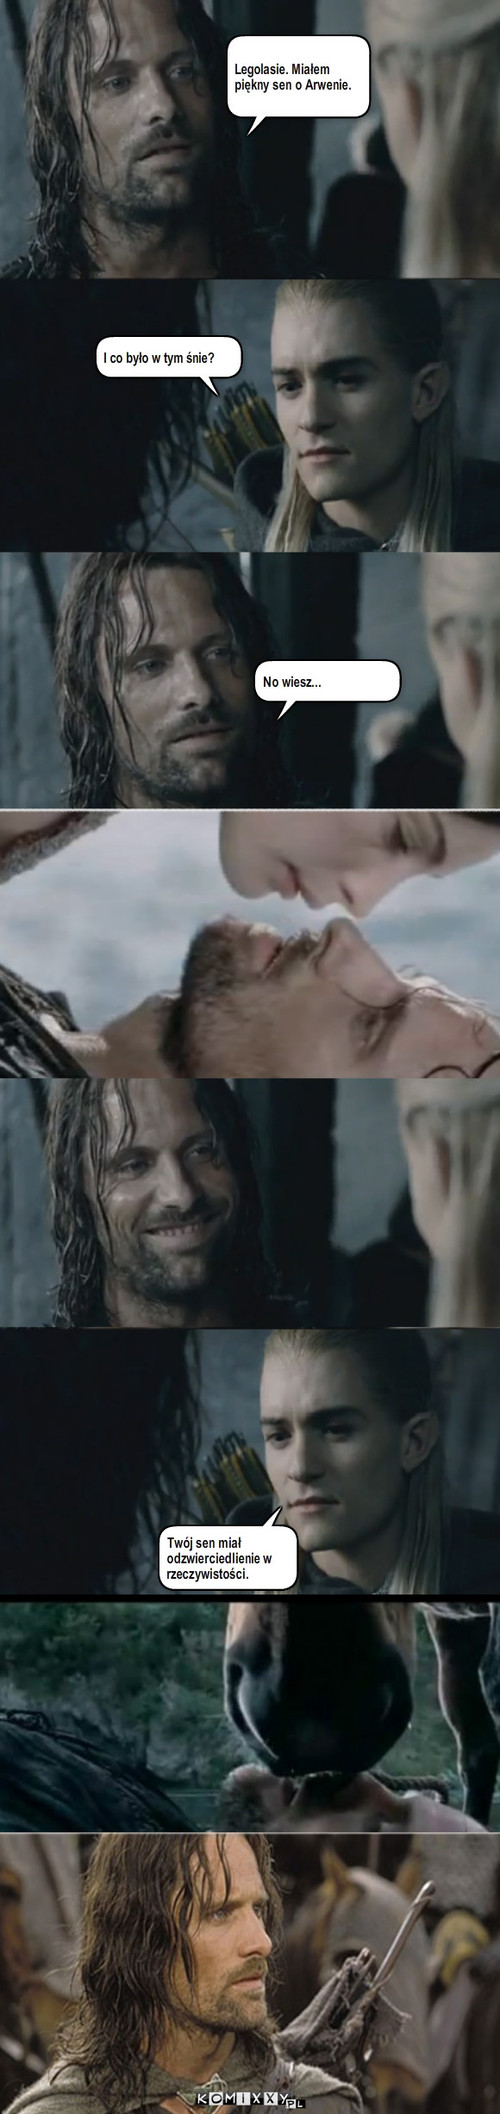 Sen Aragorna – Legolasie. Miałem piękny sen o Arwenie. I co było w tym śnie? No wiesz... Twój sen miał odzwierciedlienie w rzeczywistości. 